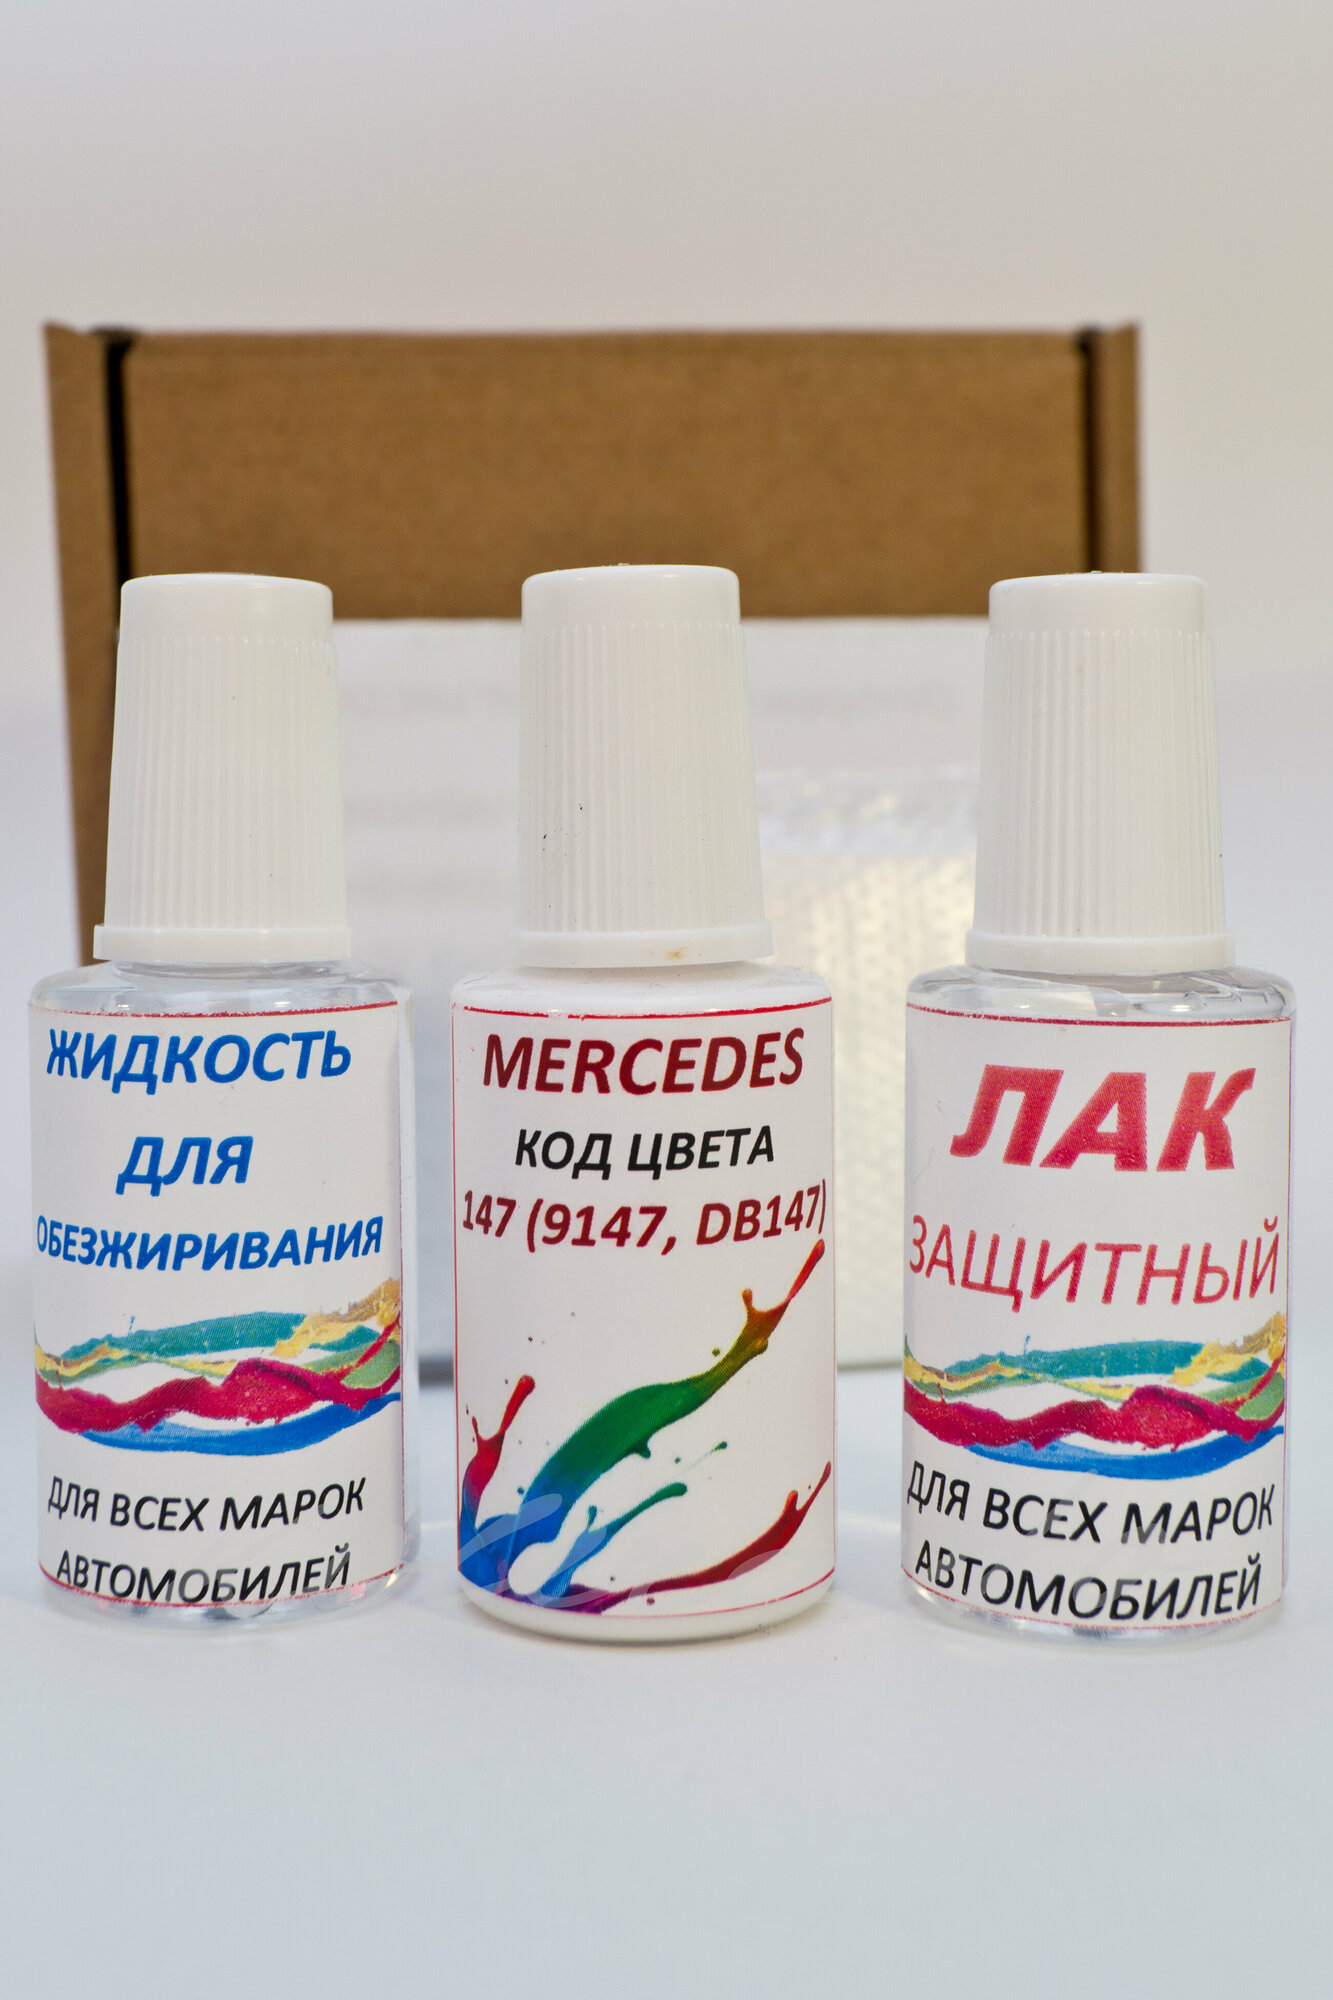 Подкраска для сколов во флаконе с кисточкой 147 (9147 DB147) для Mercedes Белый Arktikweiss краска+лак+обезжириватель 3 предмета